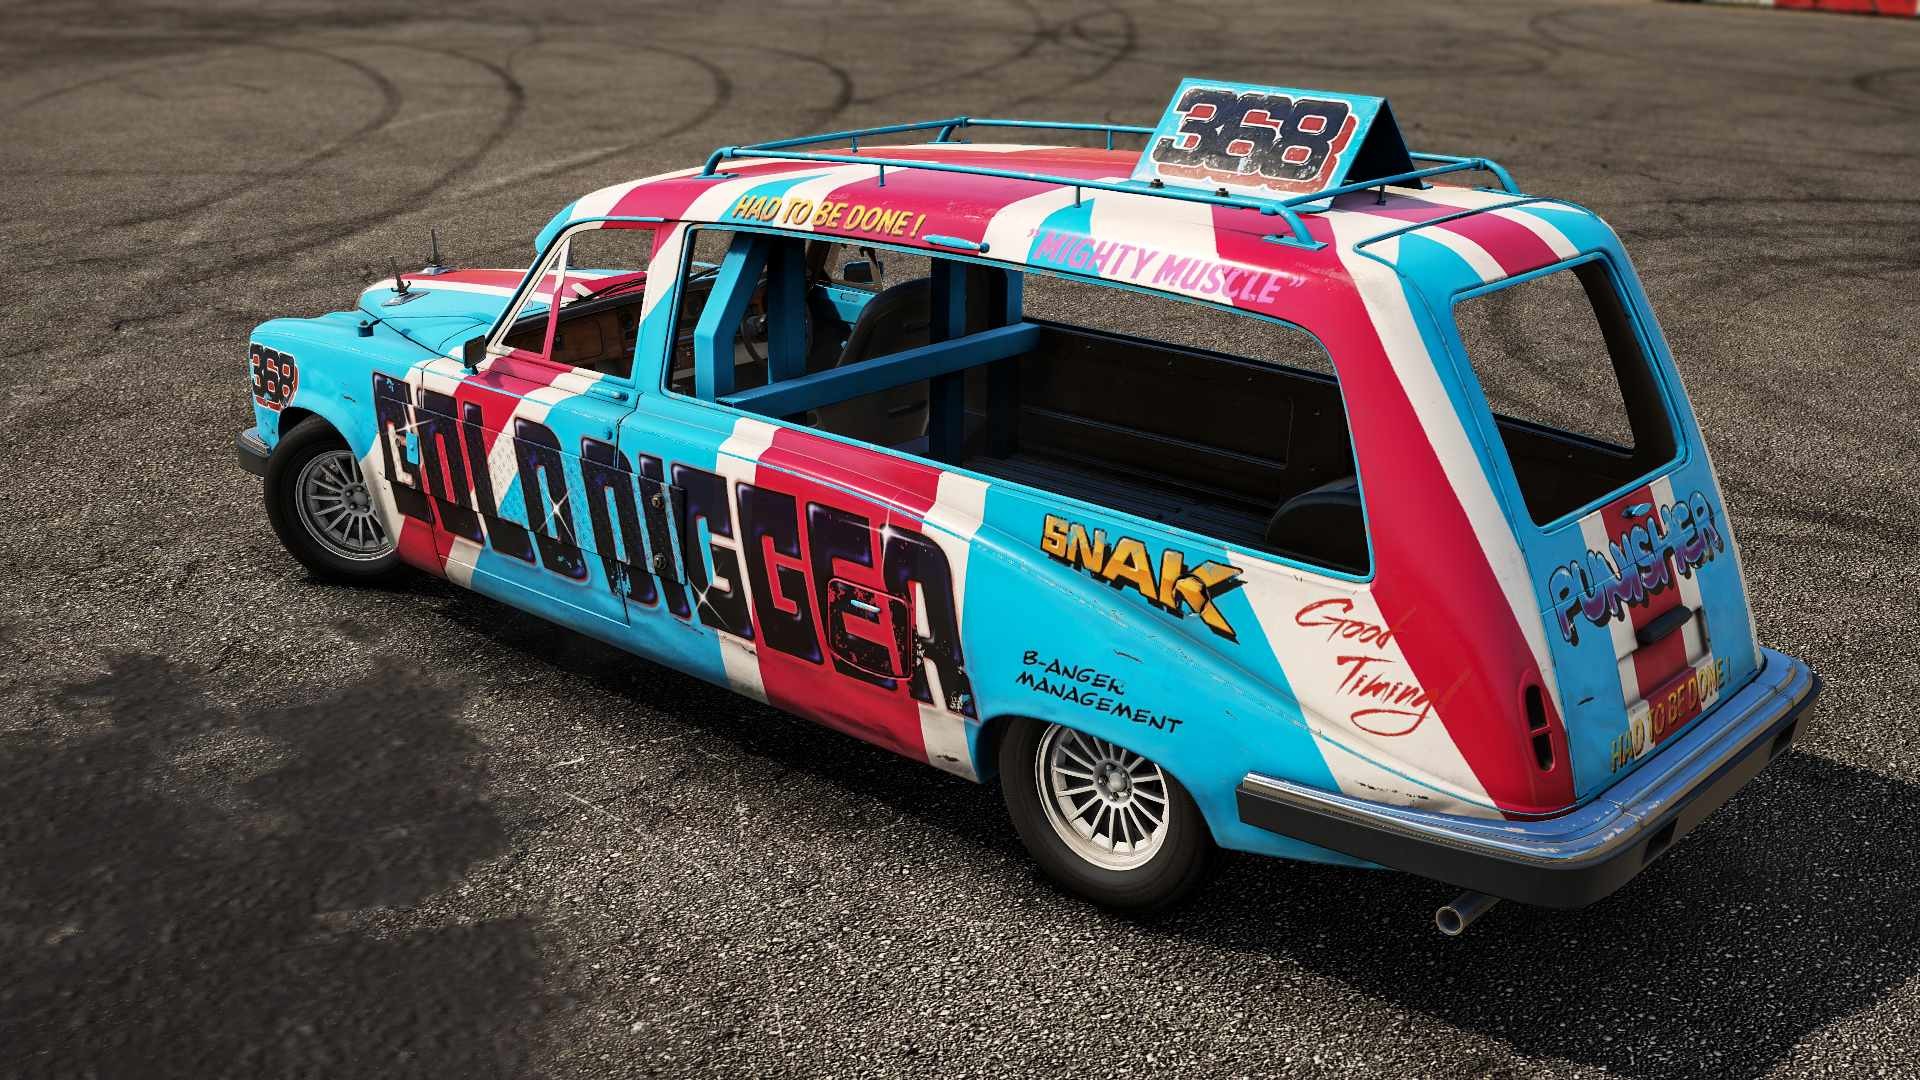 Wreckfest - Banger Racing Car Pack DLC * STEAM RU ⚡